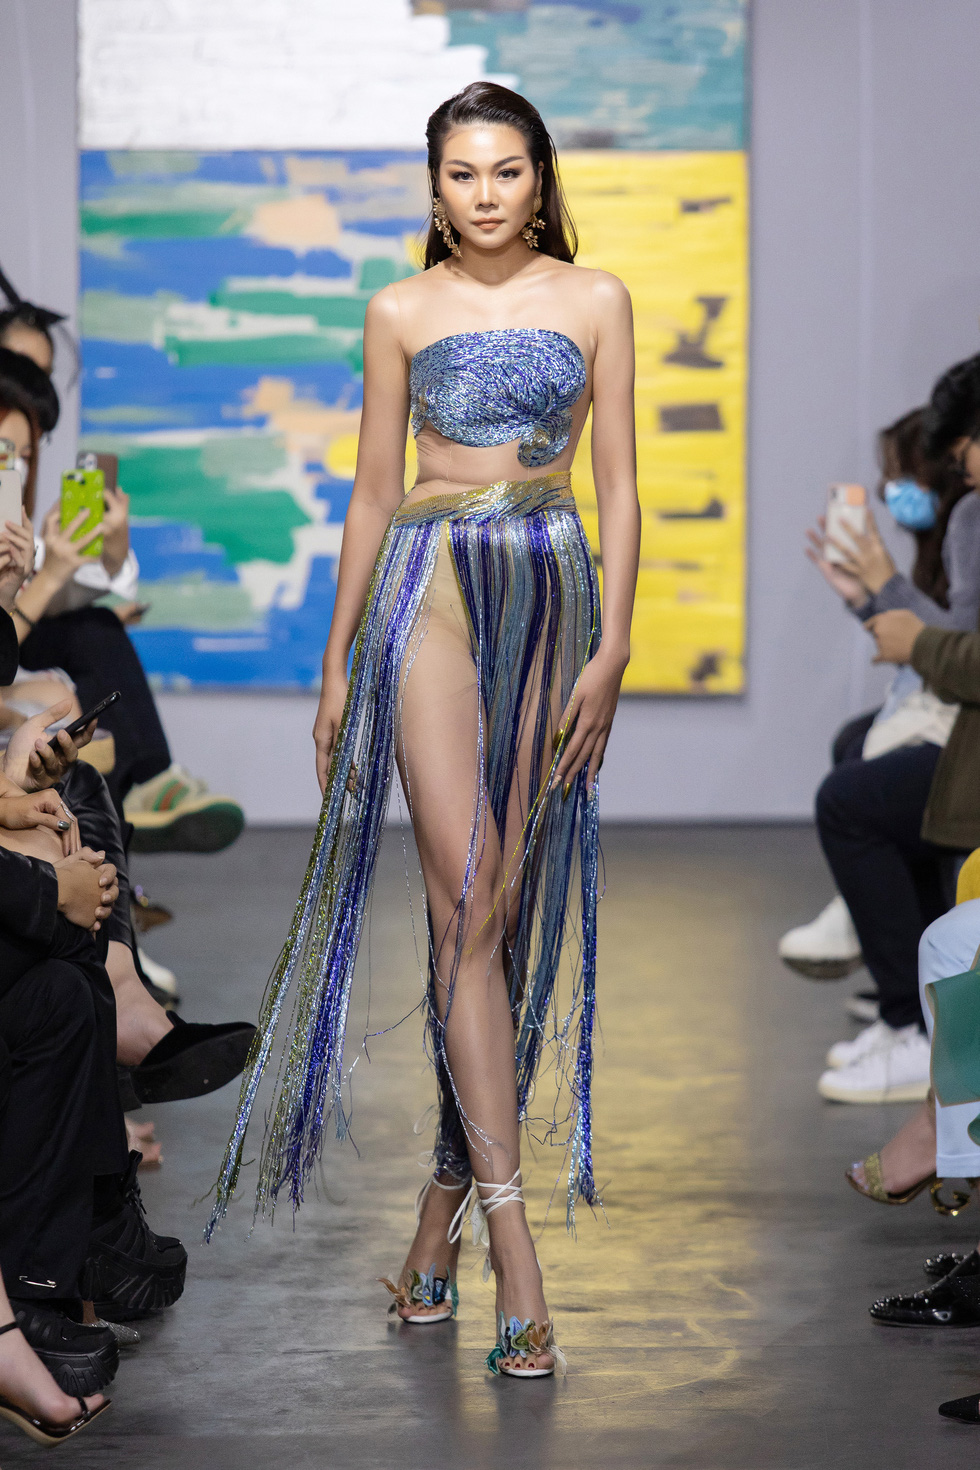 Hoa hậu Việt Nam 2020 Đỗ Thị Hà cùng siêu mẫu Thanh Hằng trong thiết kế tái chế - Ảnh 4.